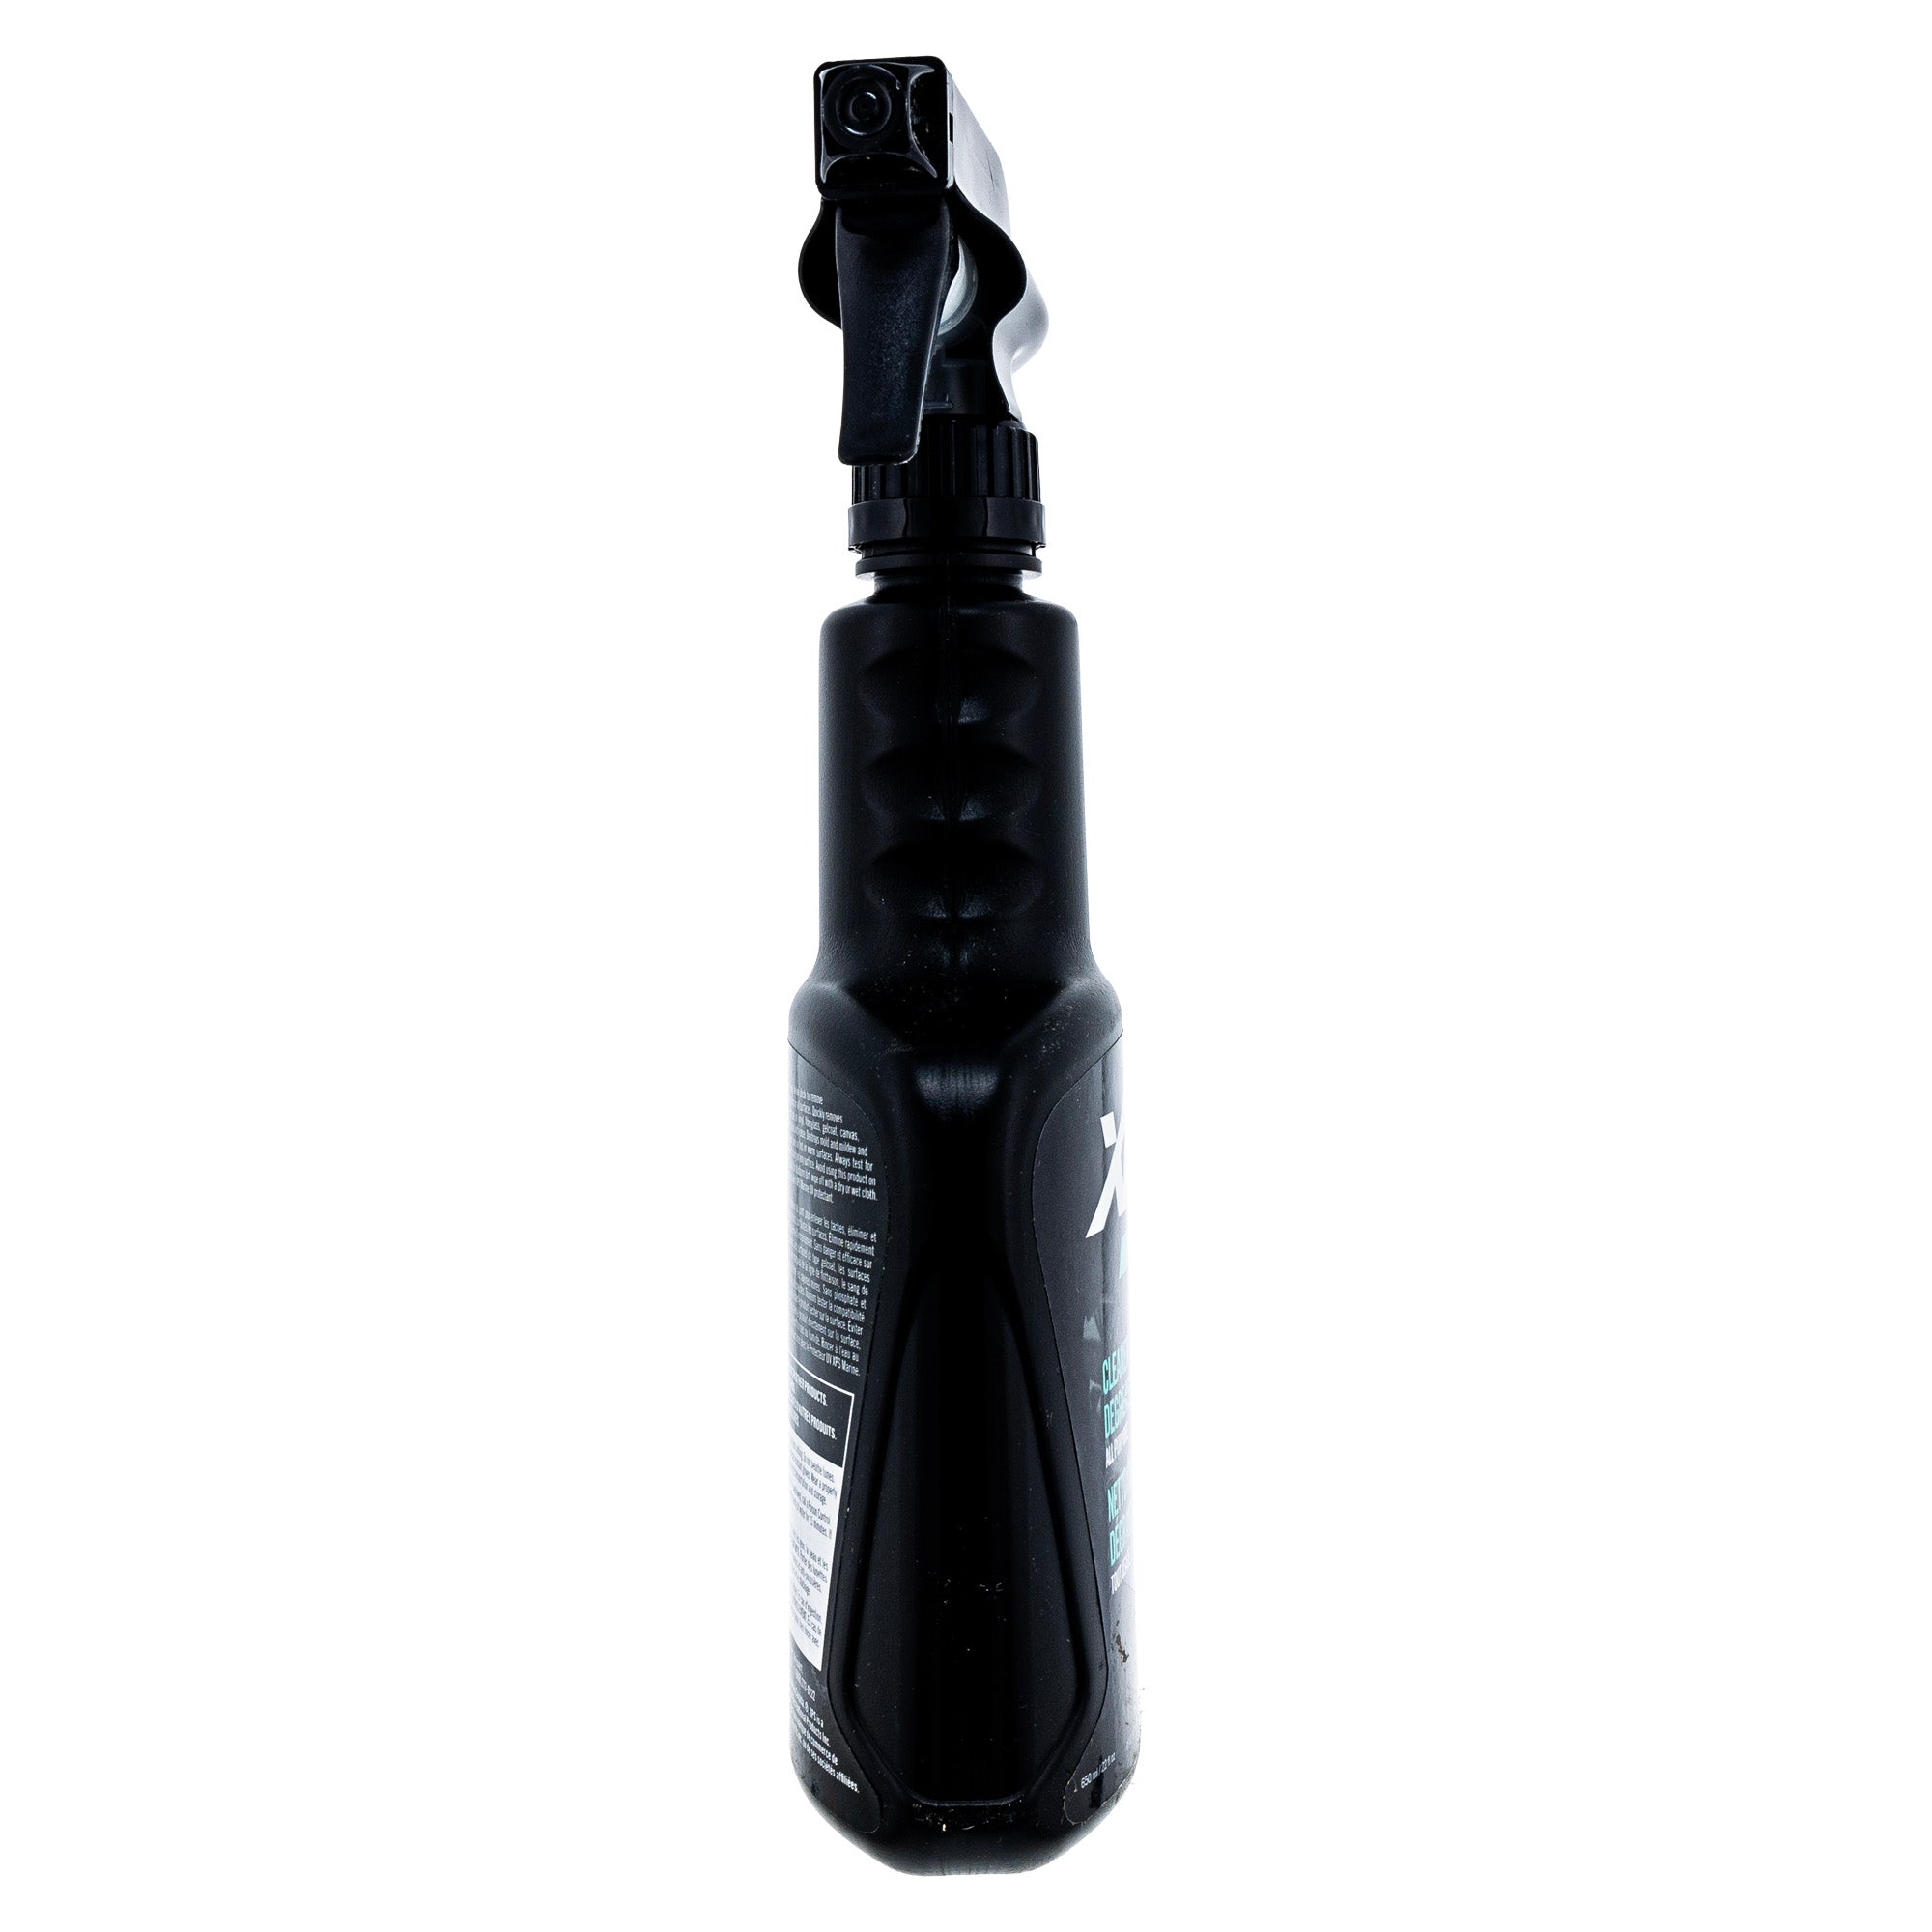 BRP 9779313 XPS Care All Purpose Cleaner & Degreaser 22floz Spray Bottle